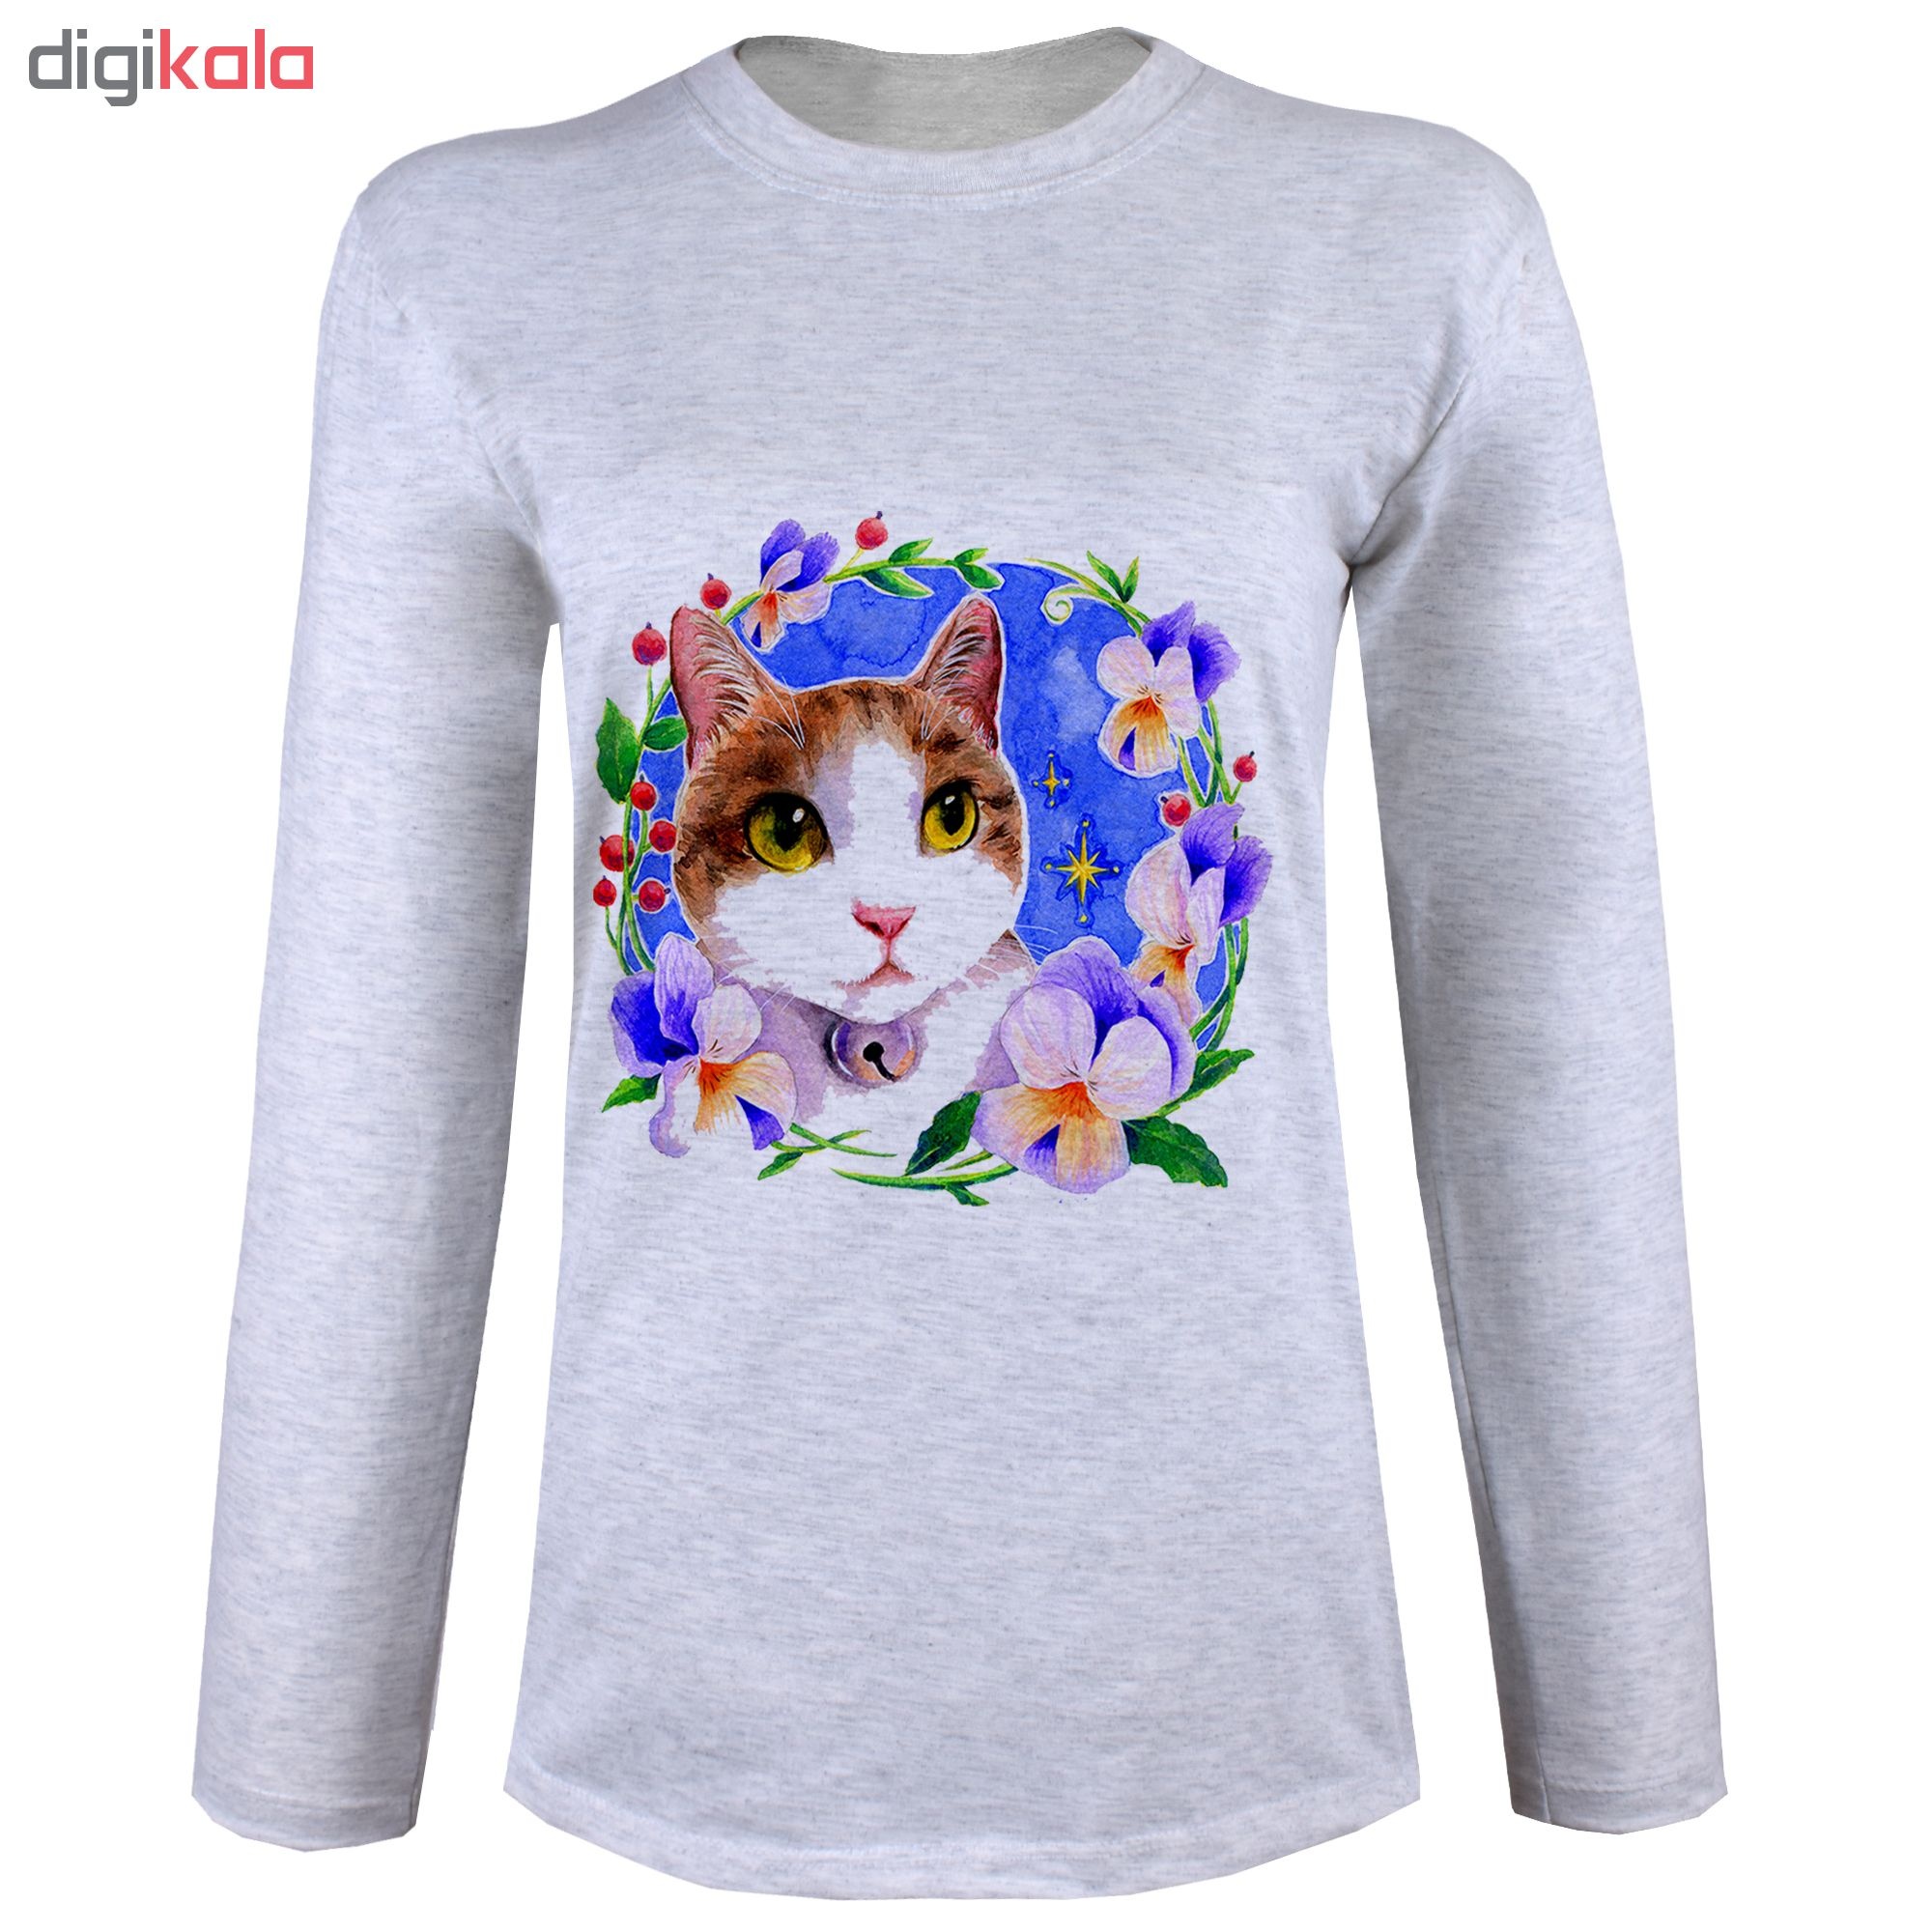 تی شرت  آستین بلند زنانه  طرح گربه و گل  کد B96